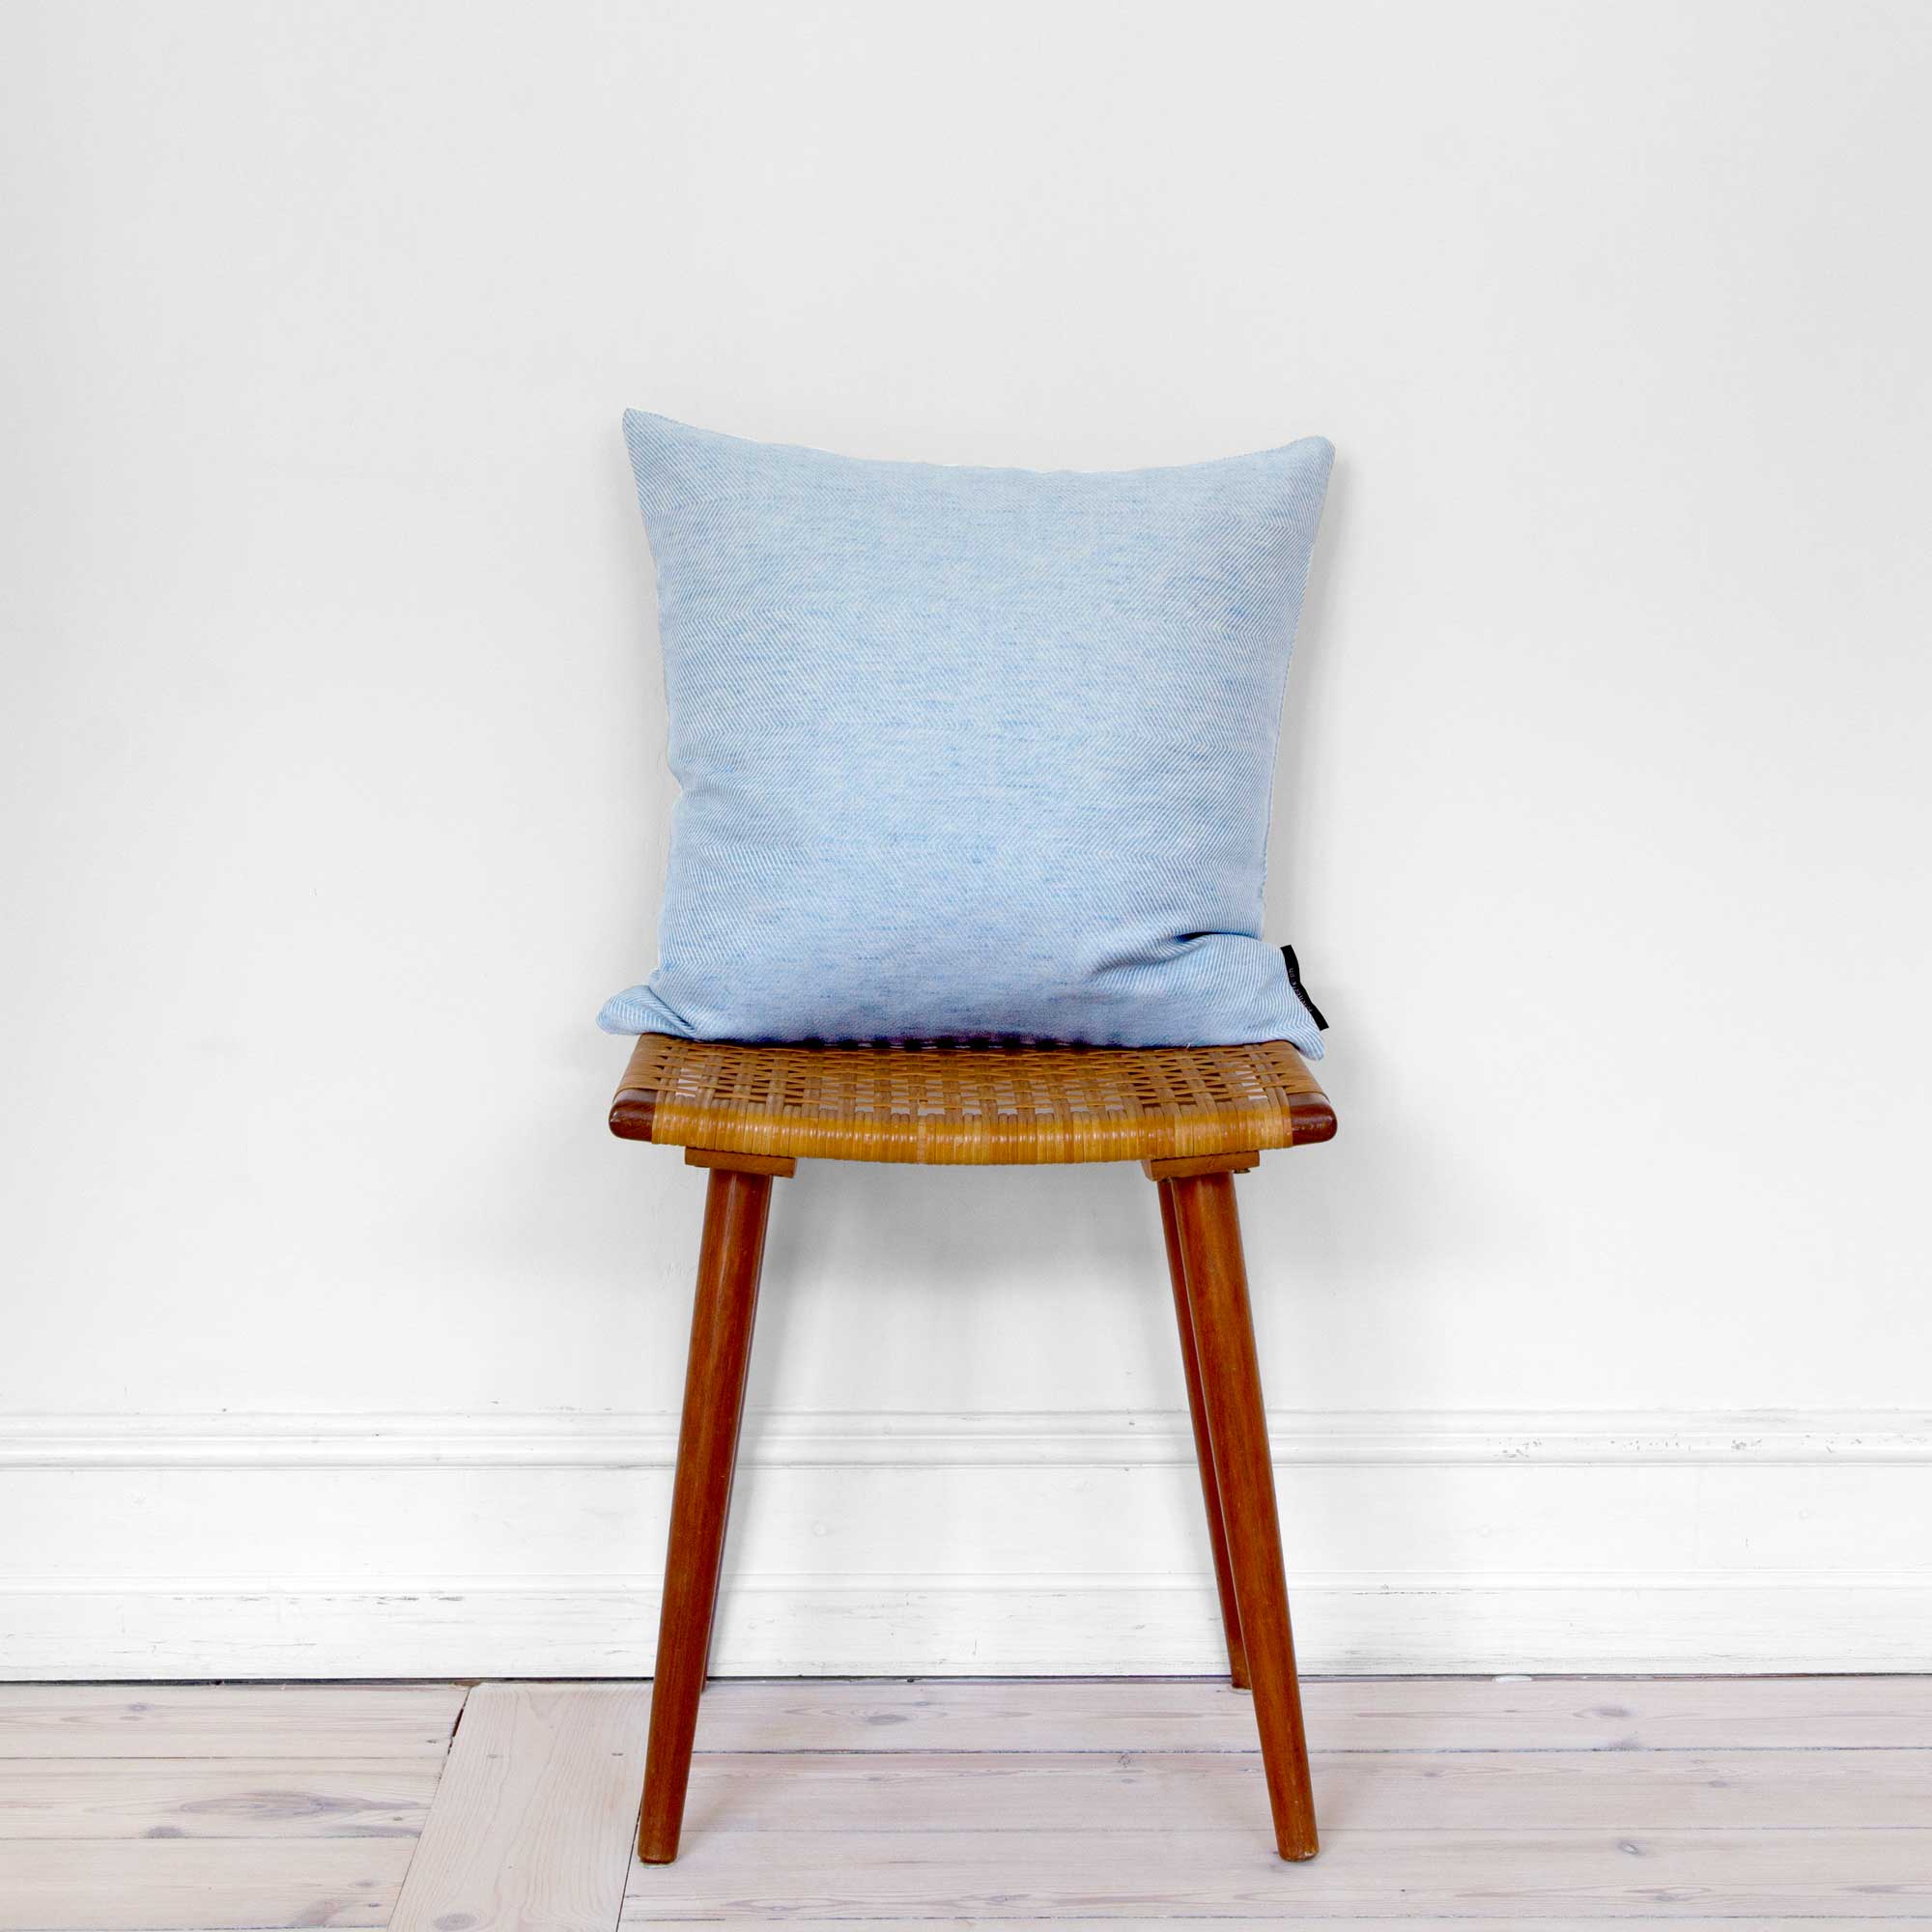 Square cushion linen/cotton Sky Blue, design by Anne Rosenberg, RosenbergCph